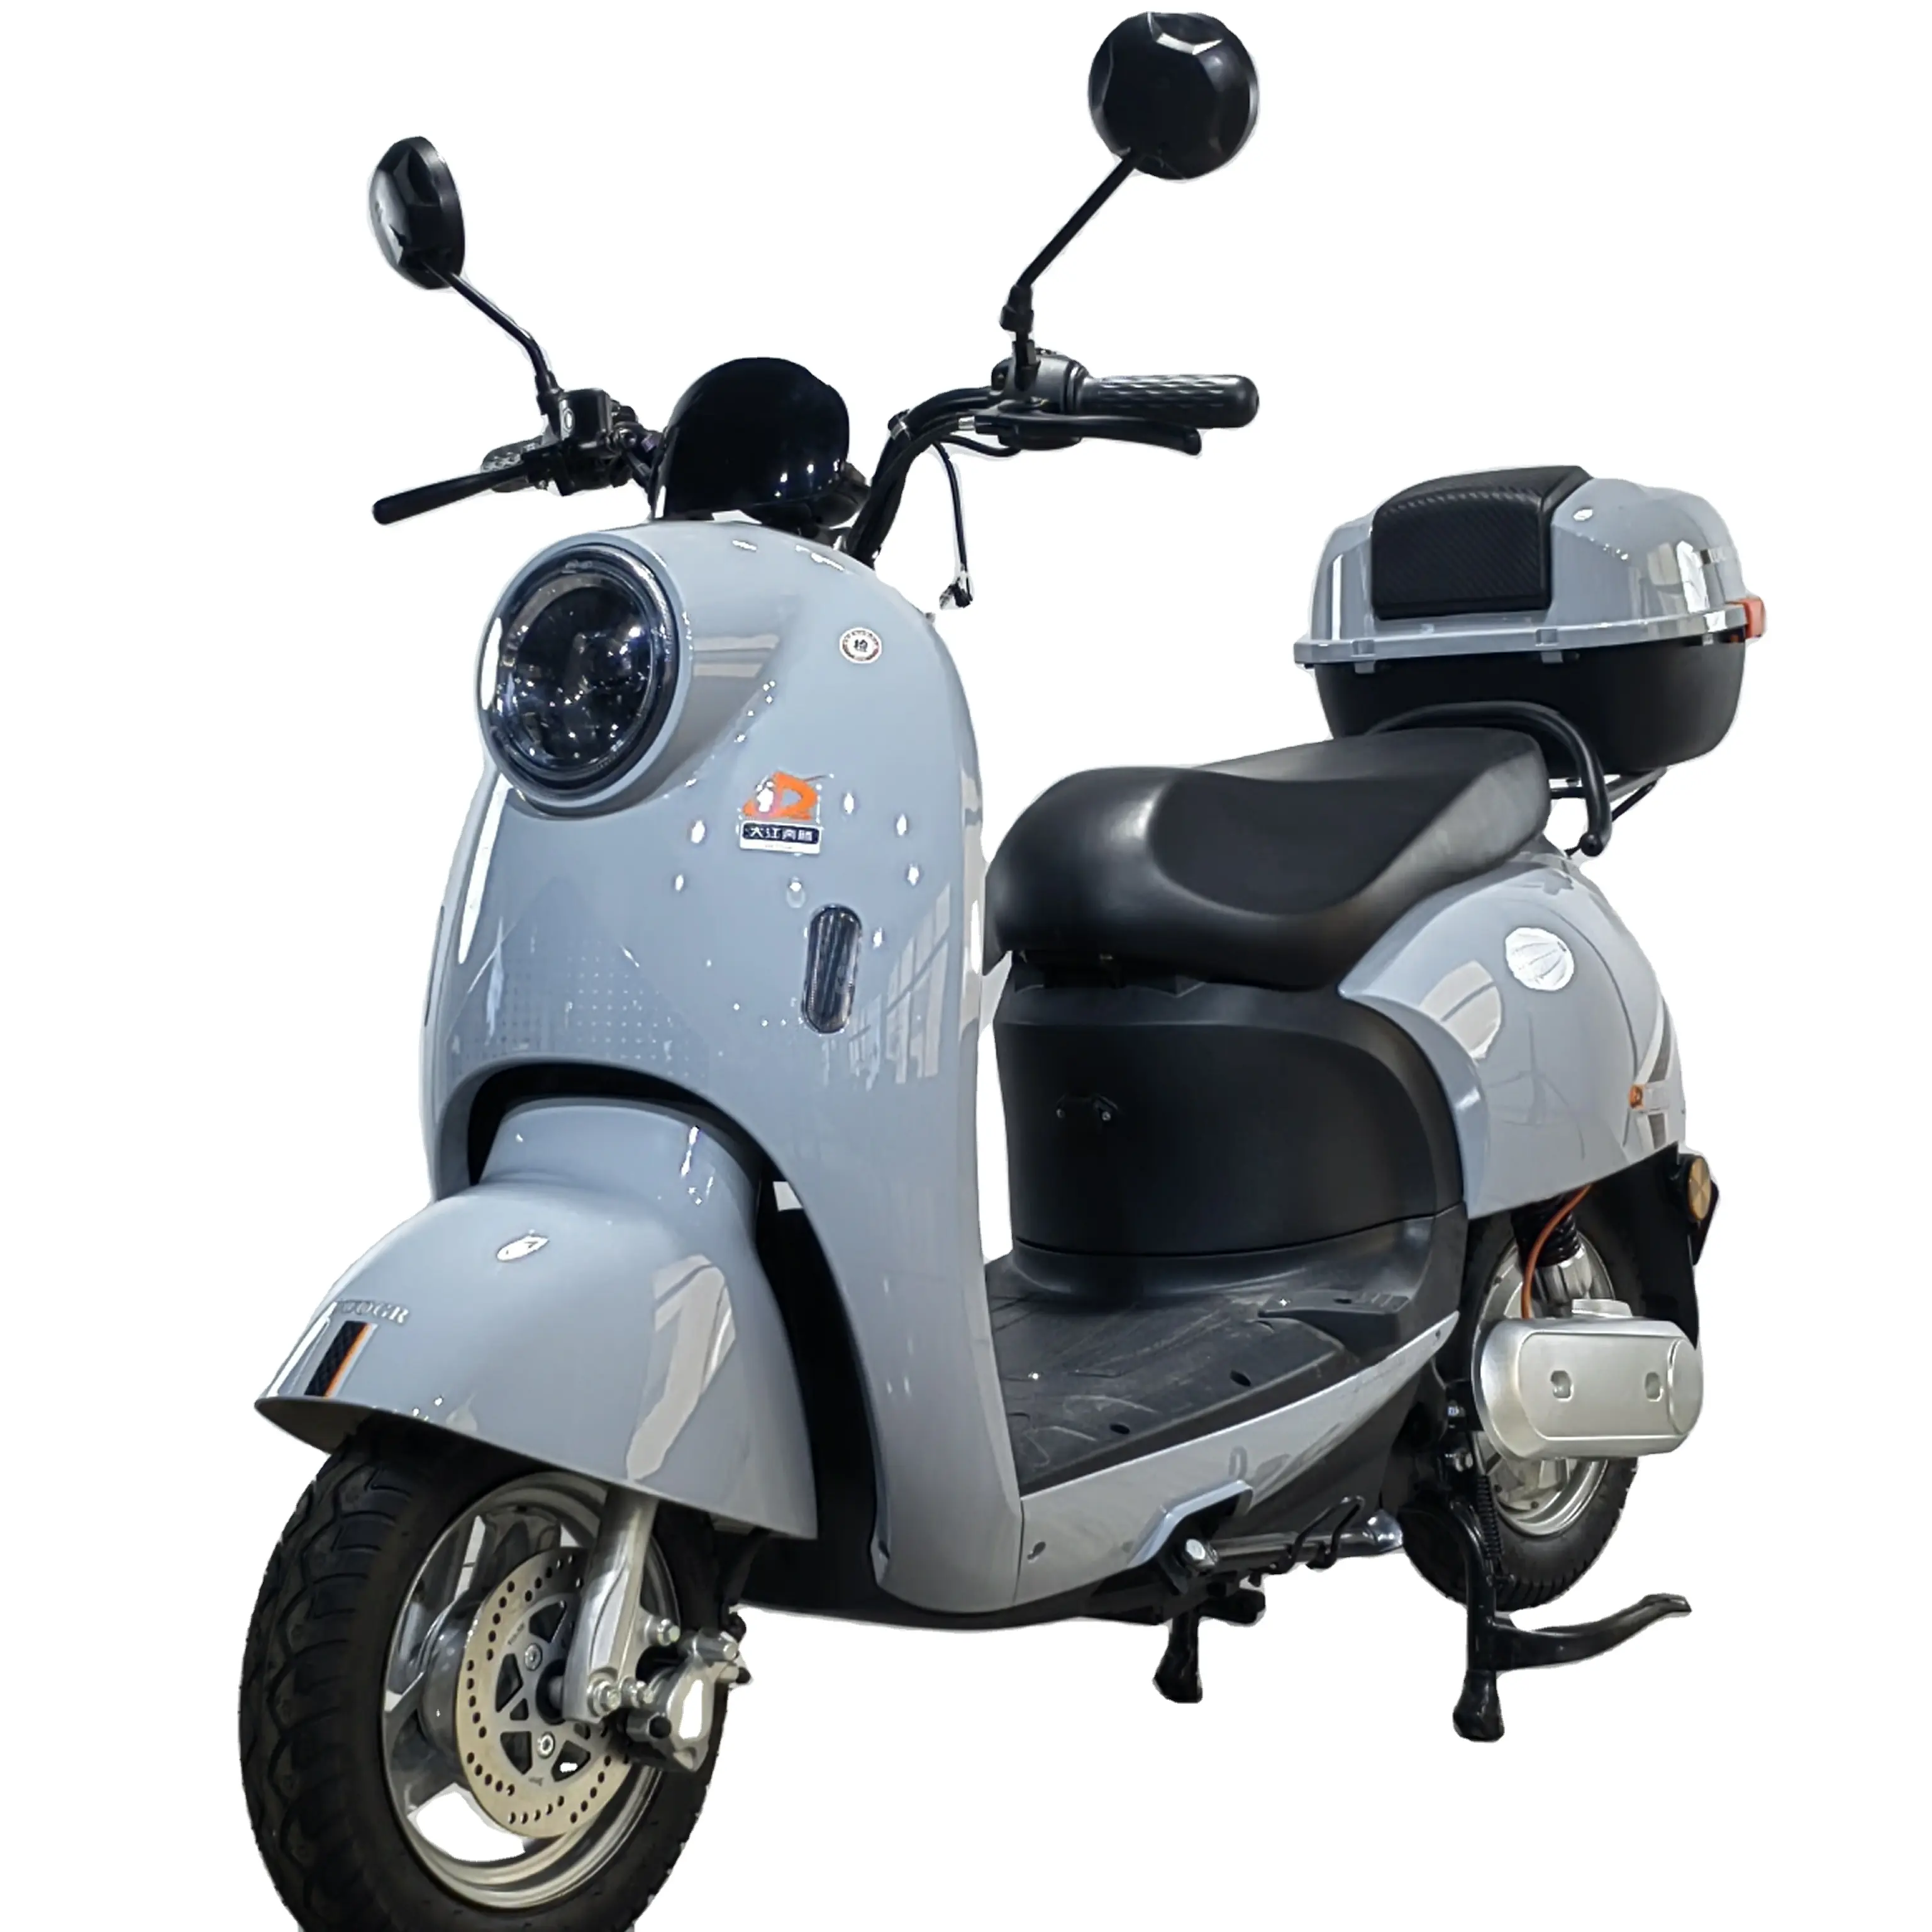 Moto motore moto con garanzia di qualità 150 cc scooter a gas per adulti a buon mercato benzina ciclomotore carburante e scooter